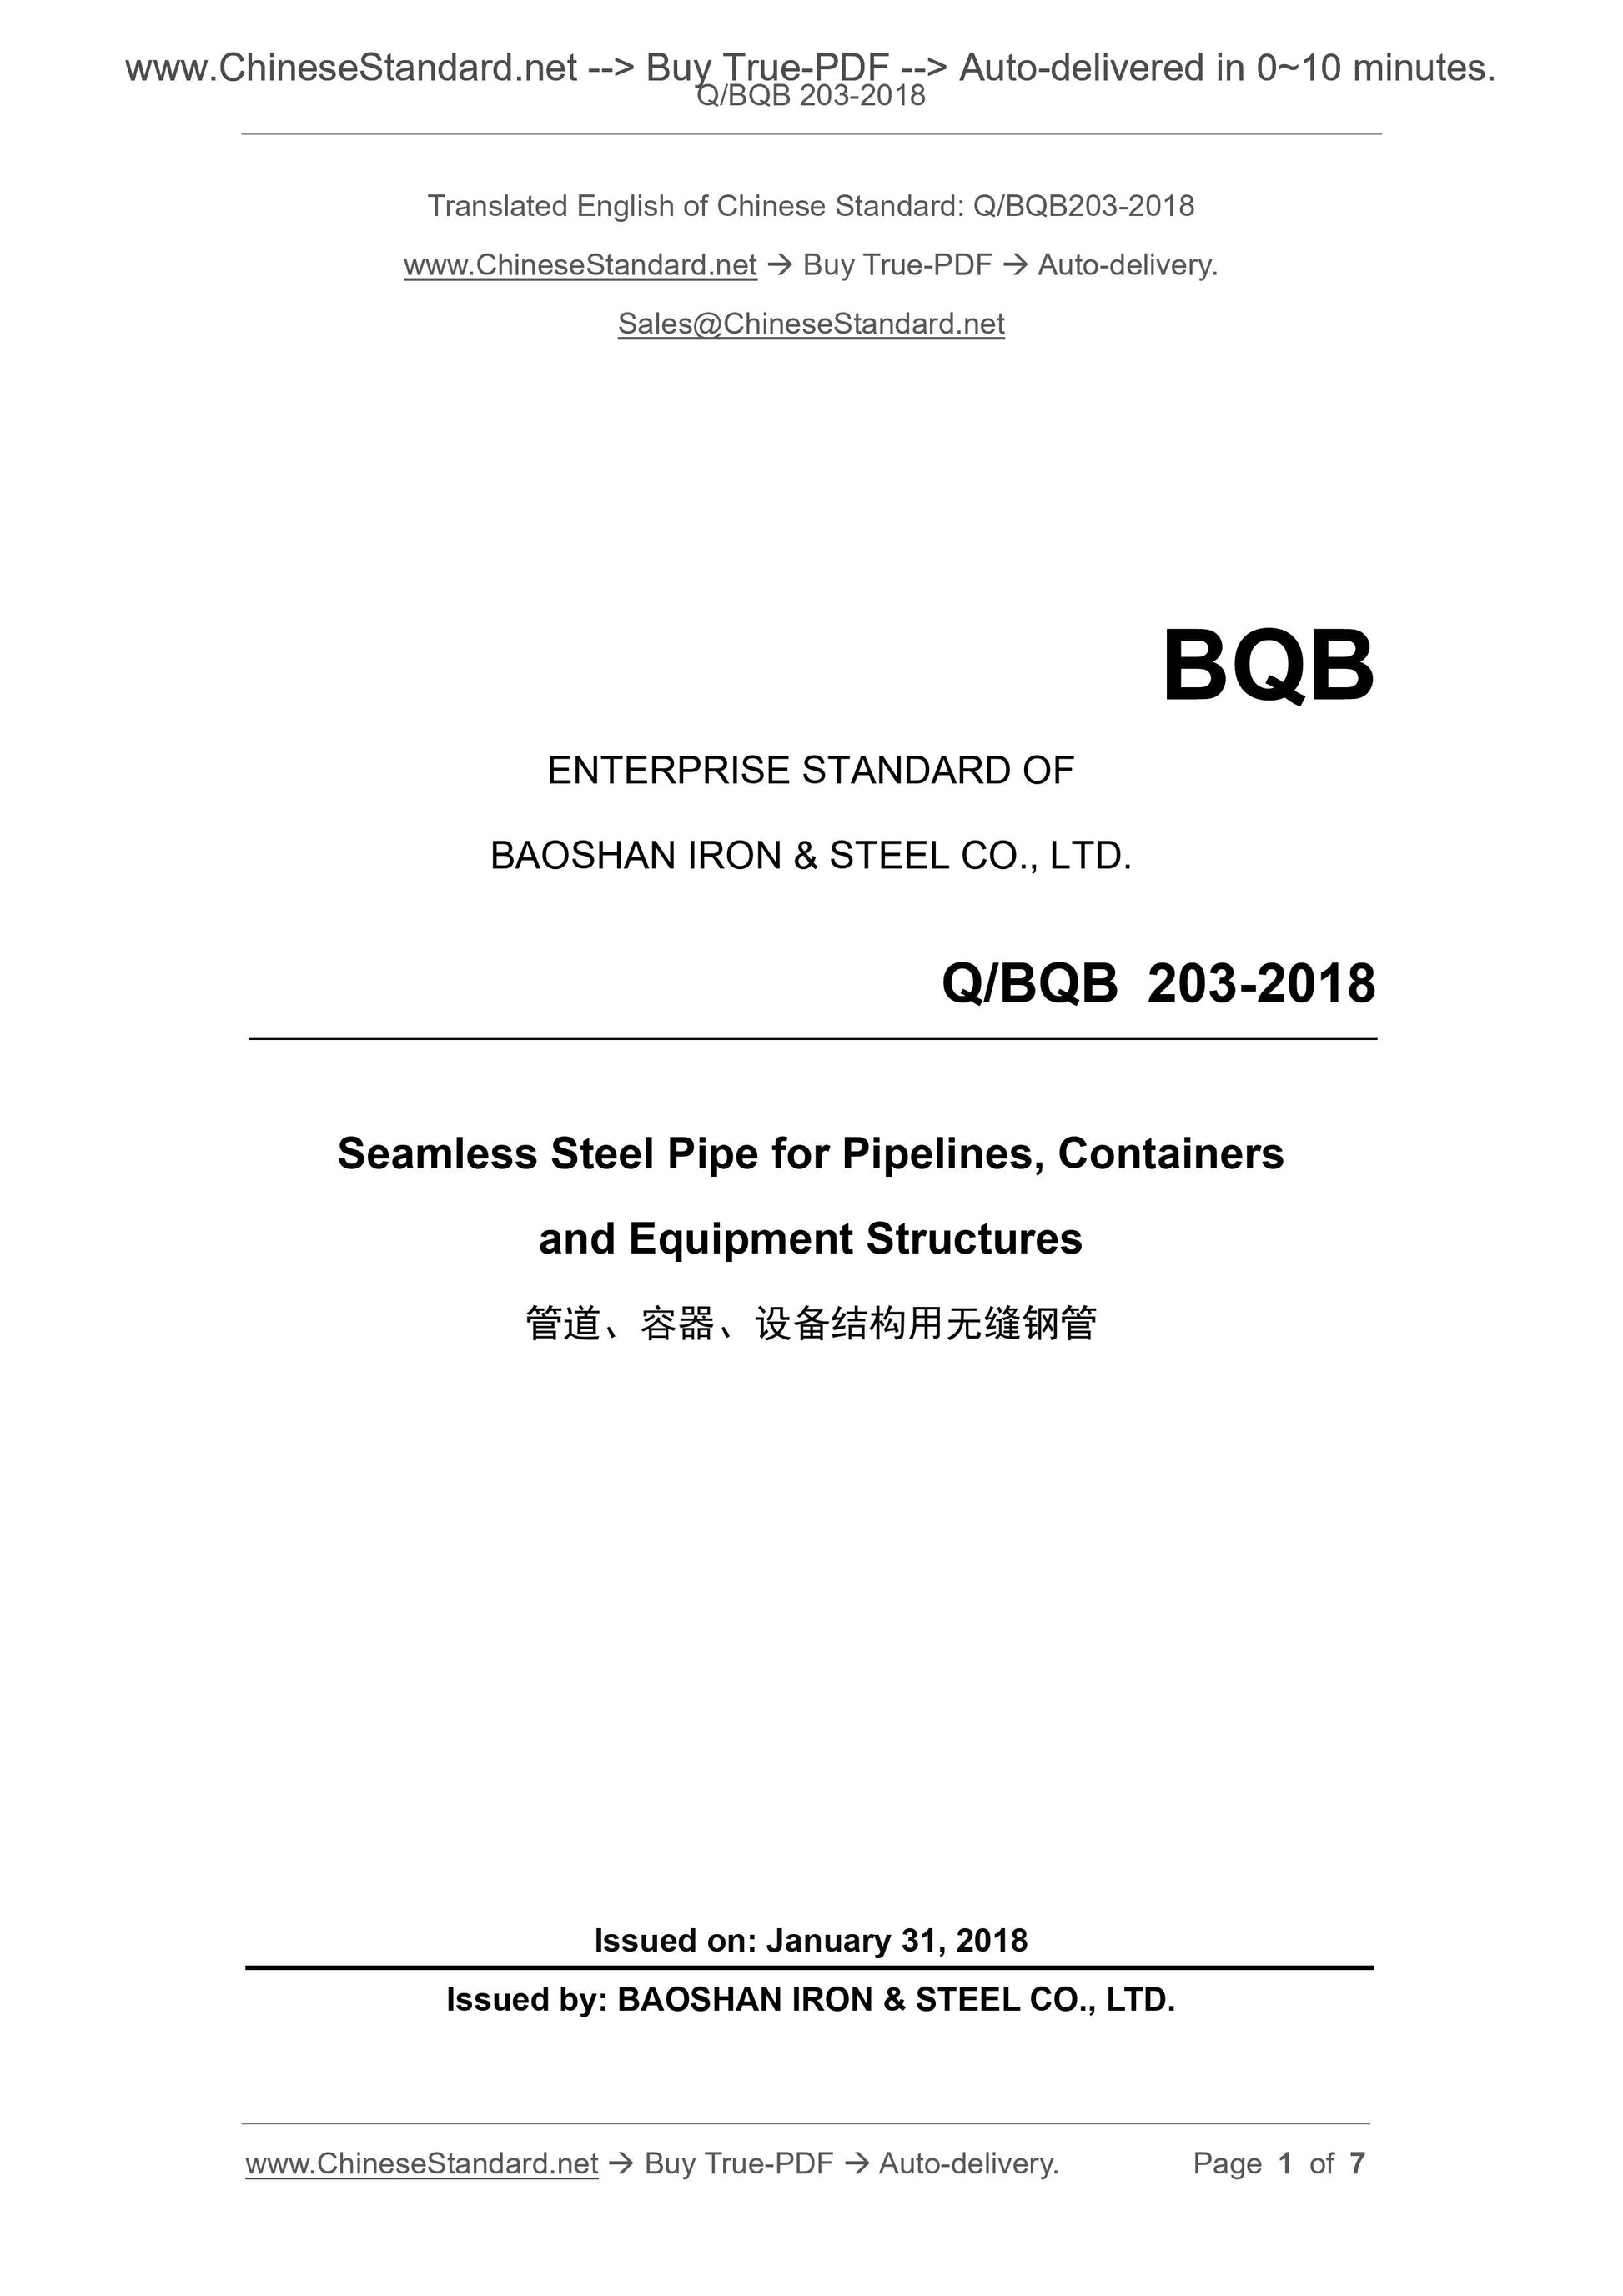 Q/BQB 203-2018 Page 1